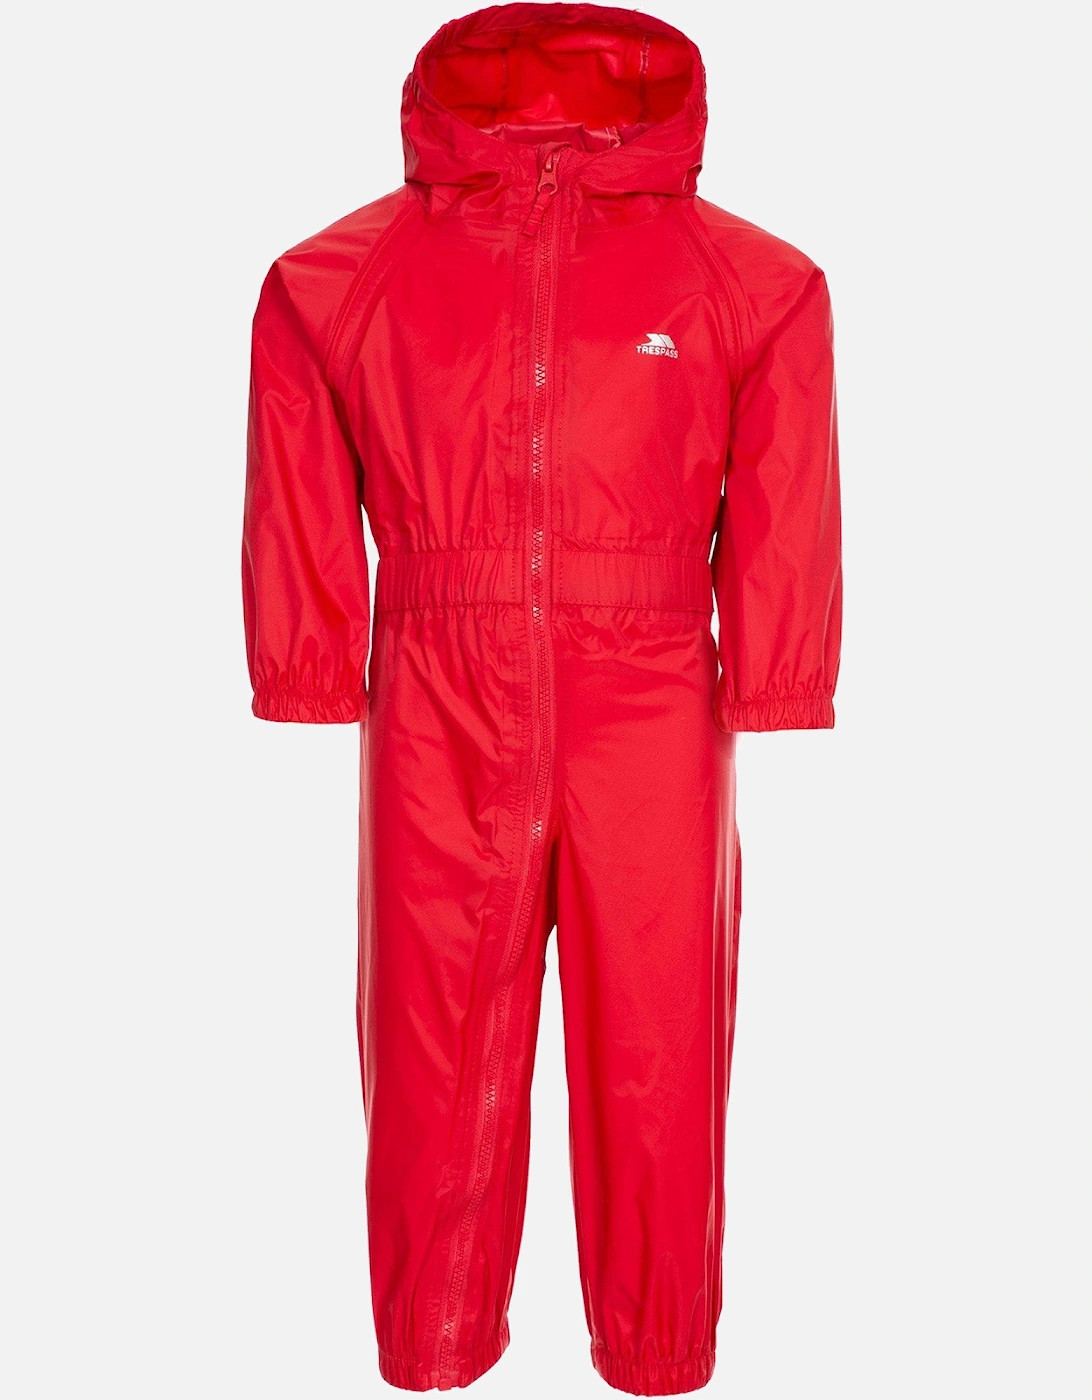 Kids Button Waterproof Rain Suit, 16 of 15